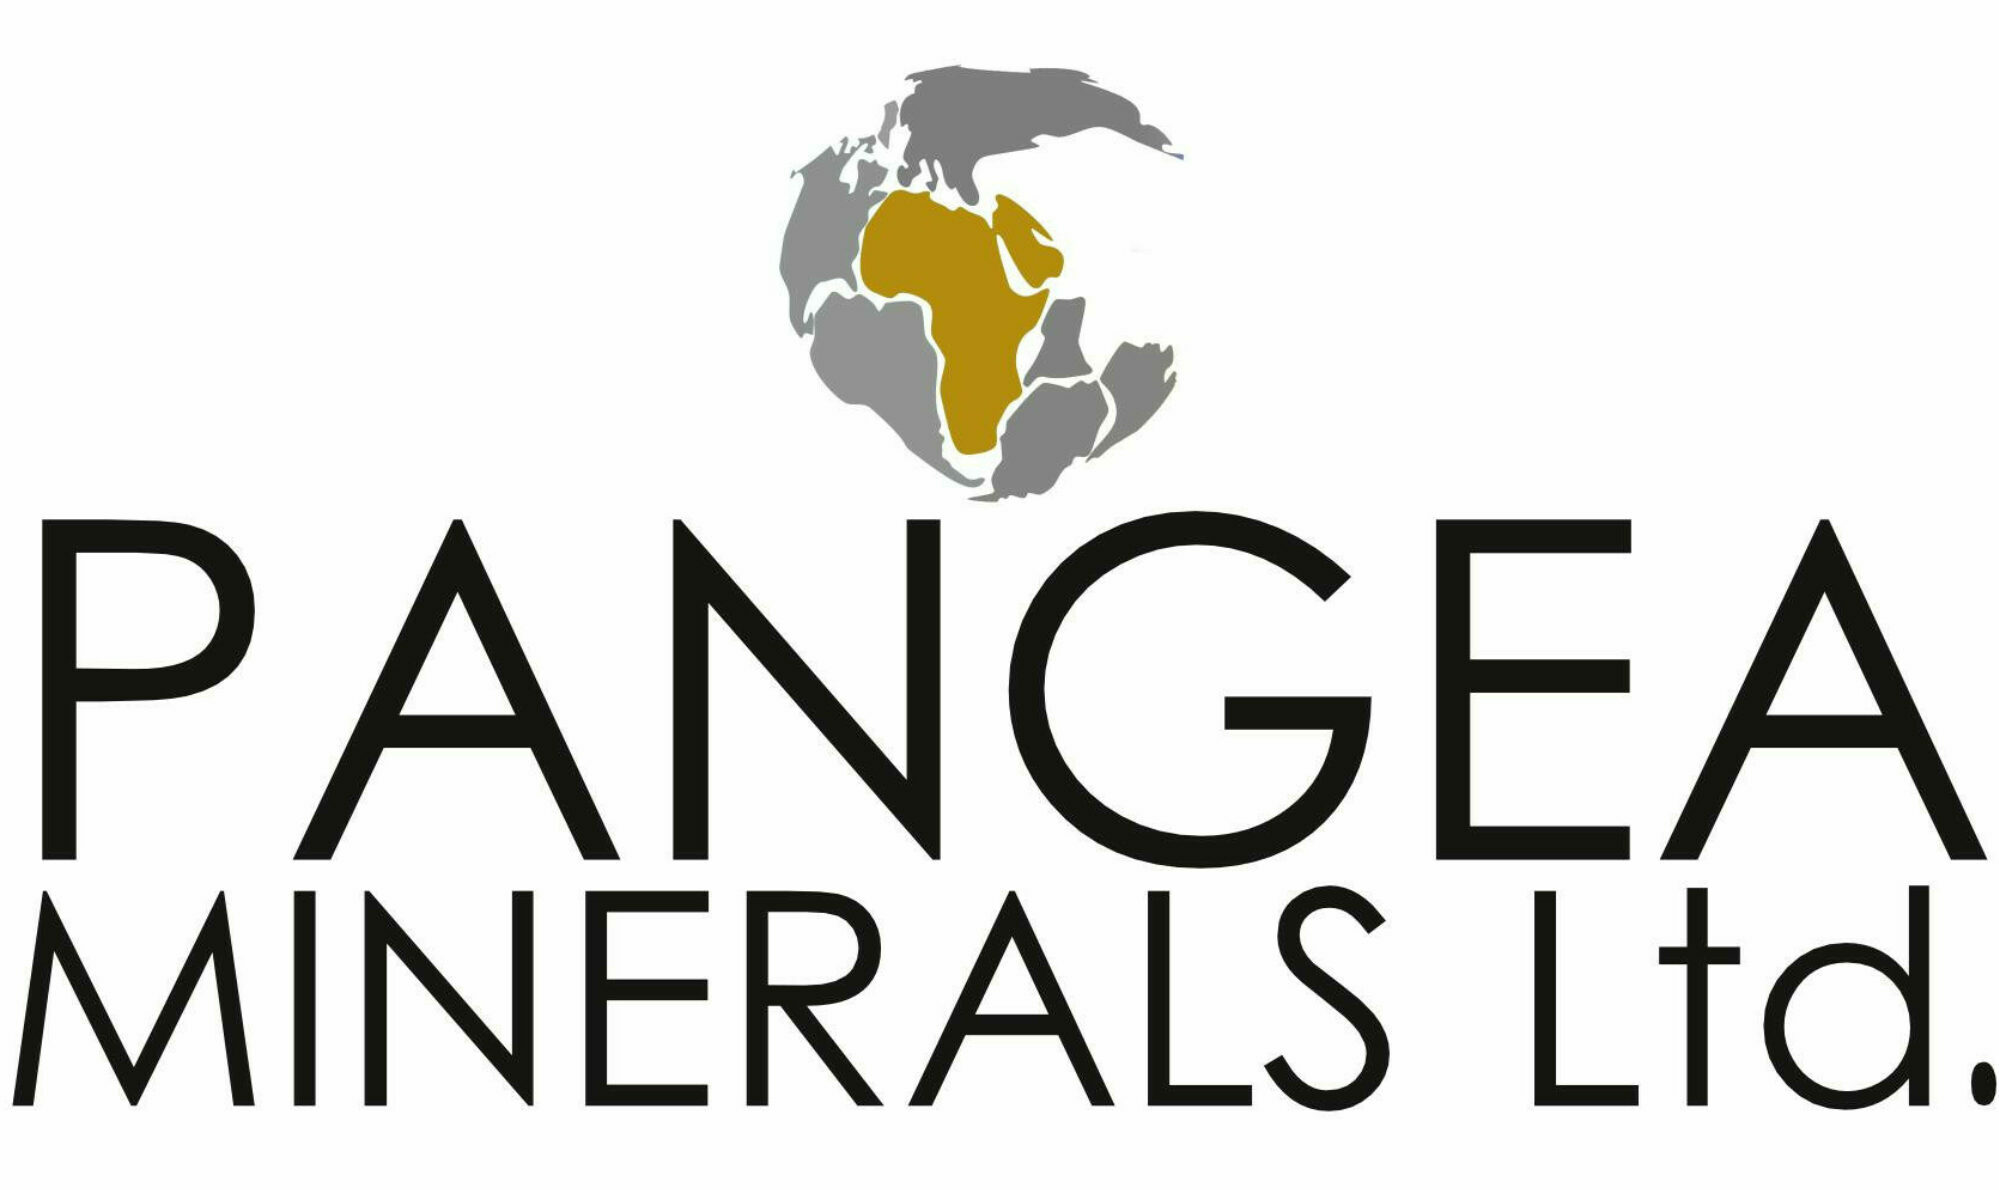 Pangea Minerals